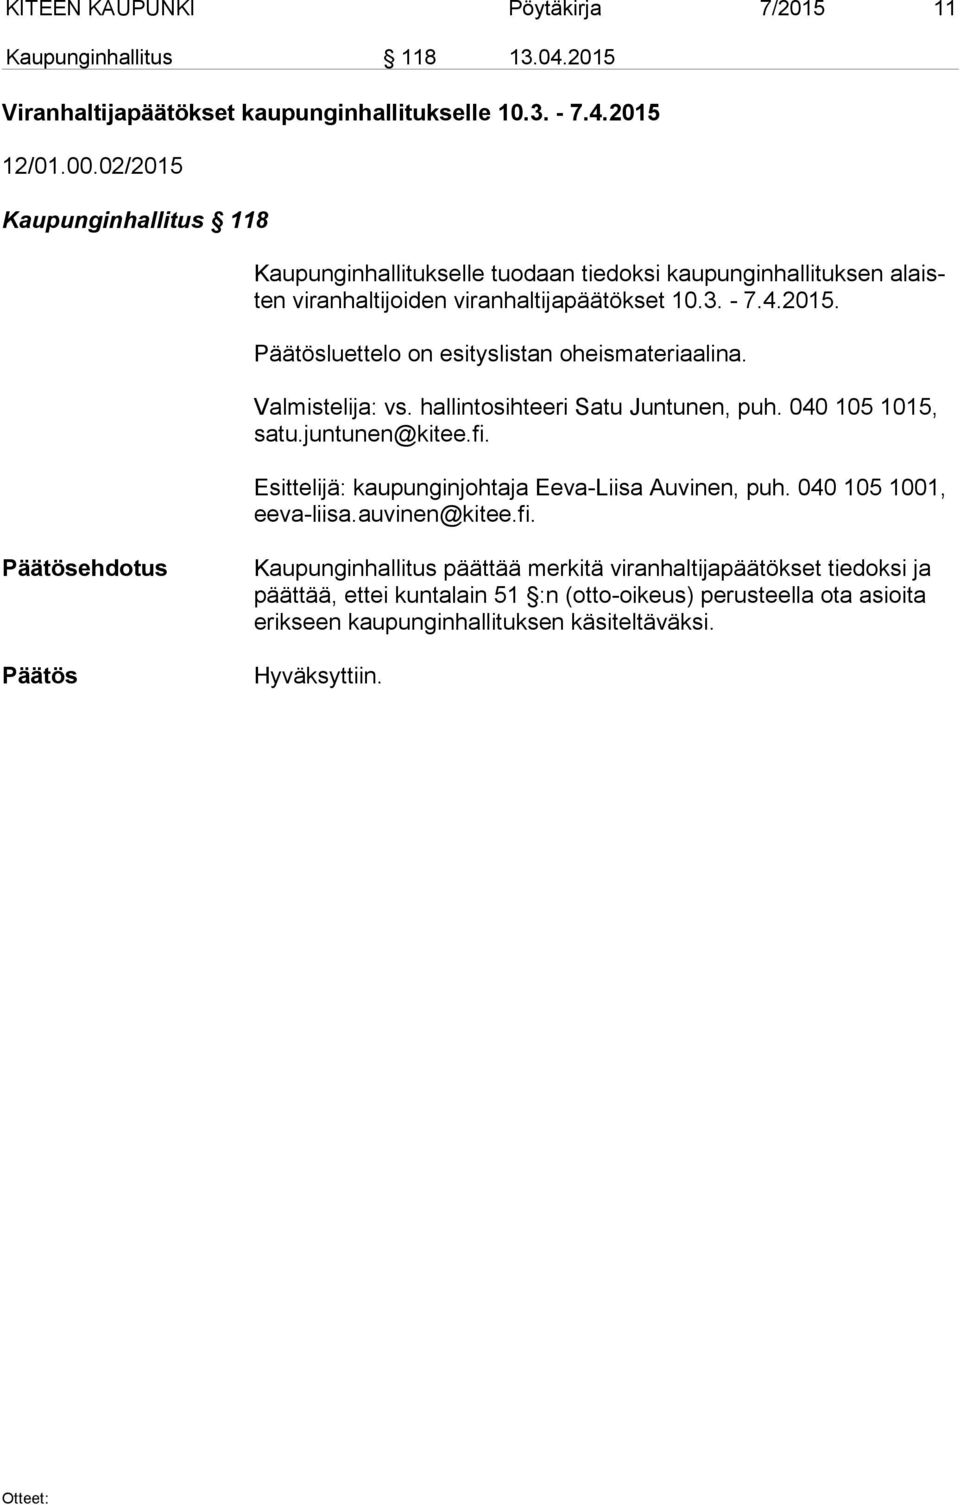 Valmistelija: vs. hallintosihteeri Satu Juntunen, puh. 040 105 1015, sa tu.juntunen@kitee.fi. Esittelijä: kaupunginjohtaja Eeva-Liisa Auvinen, puh. 040 105 1001, ee va-lii sa.